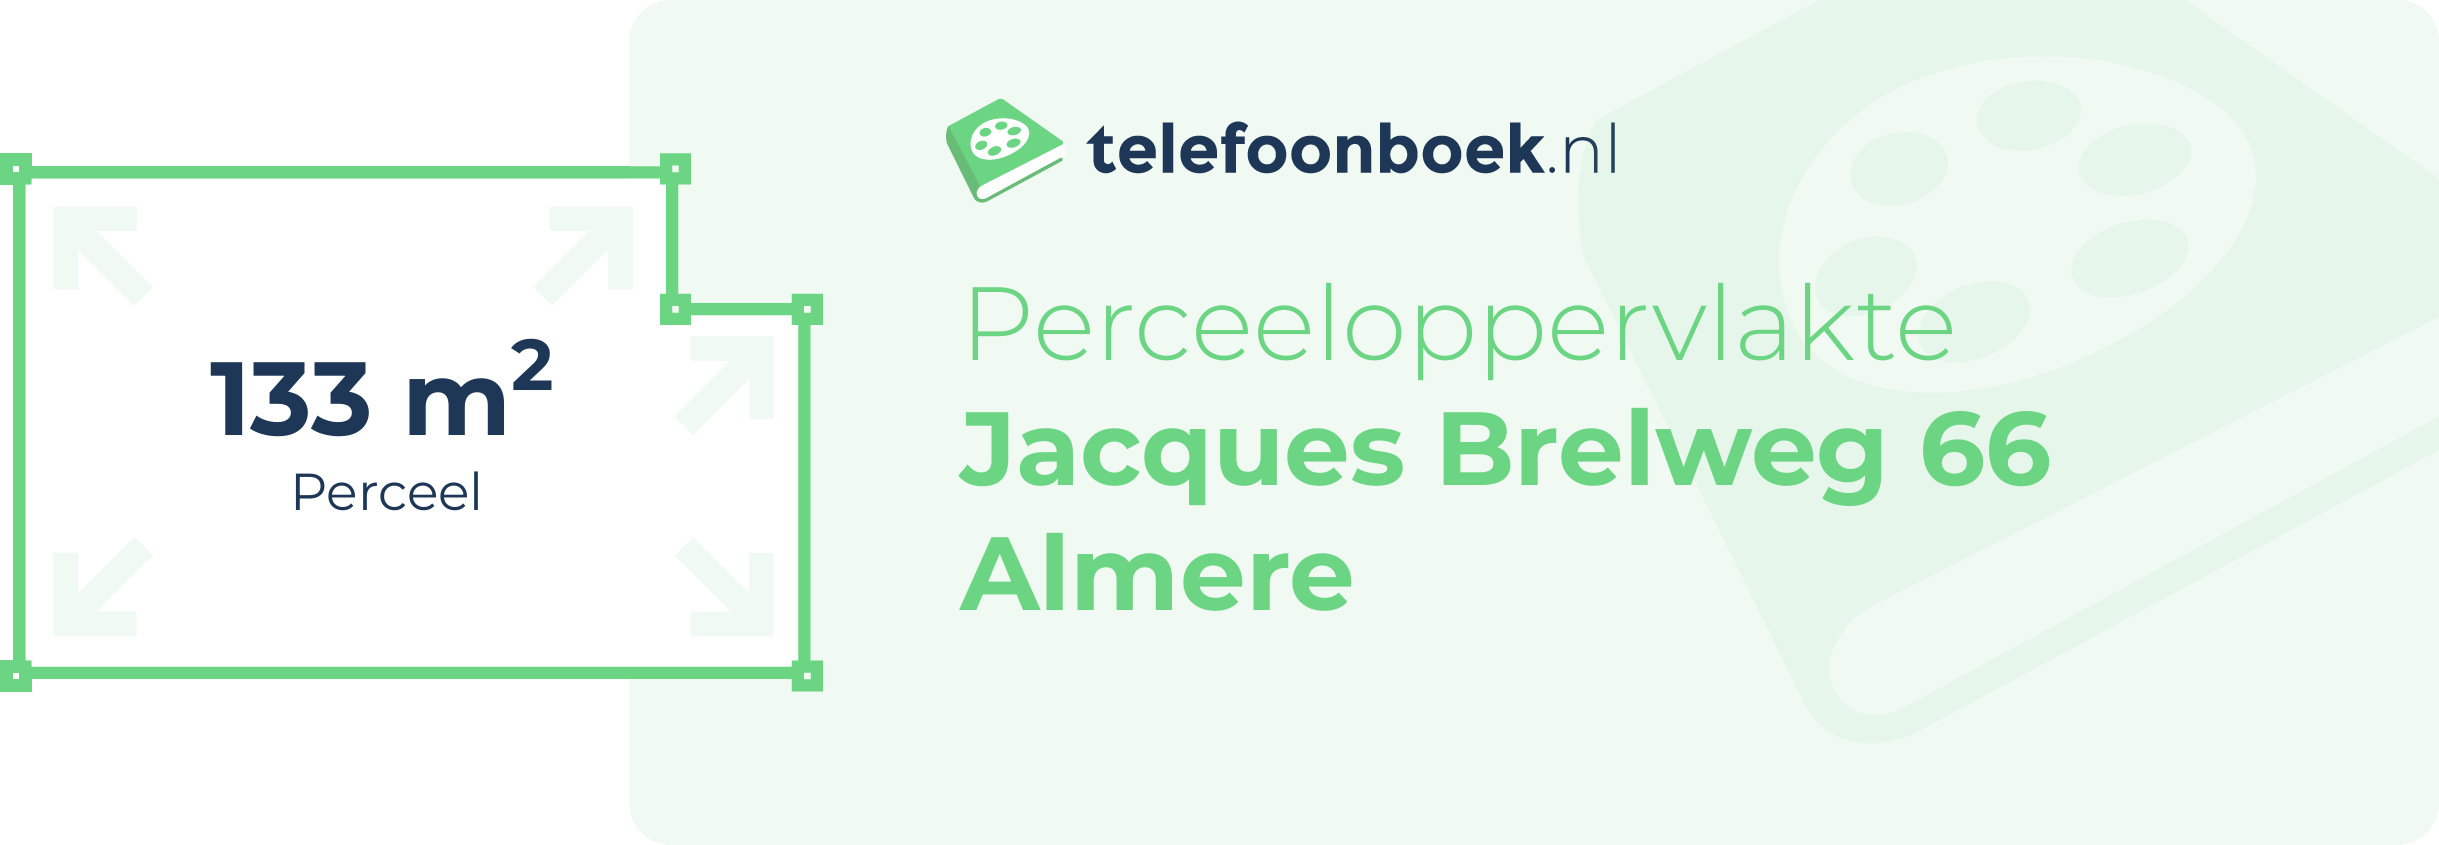 Perceeloppervlakte Jacques Brelweg 66 Almere